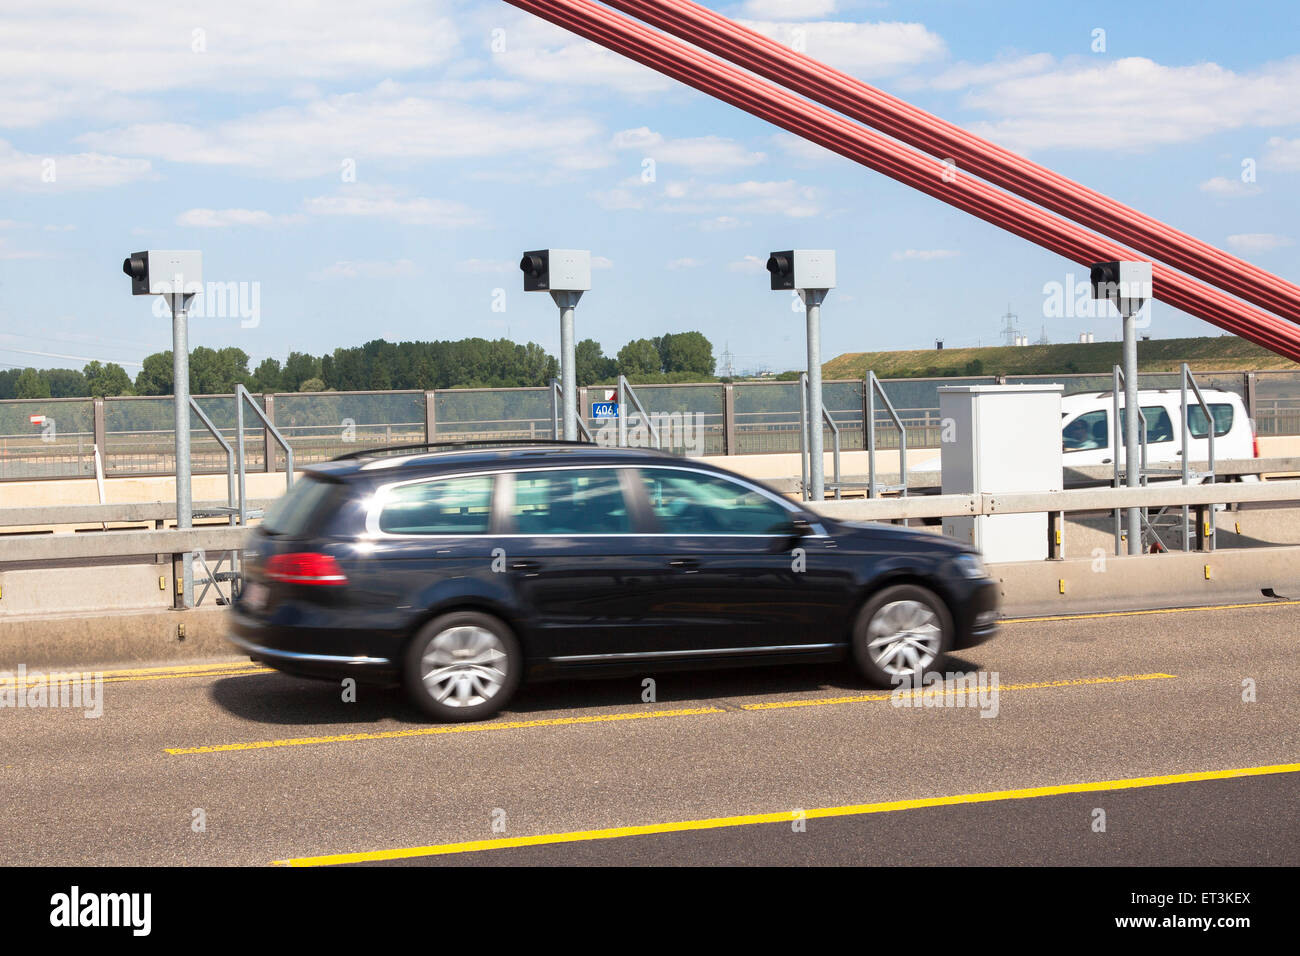 L'Europa, Germania, Colonia, trappole radar sul Reno a ponte dell'autostrada Autobahn A1 tra Colonia e Leverkusen. A causa massiv Foto Stock